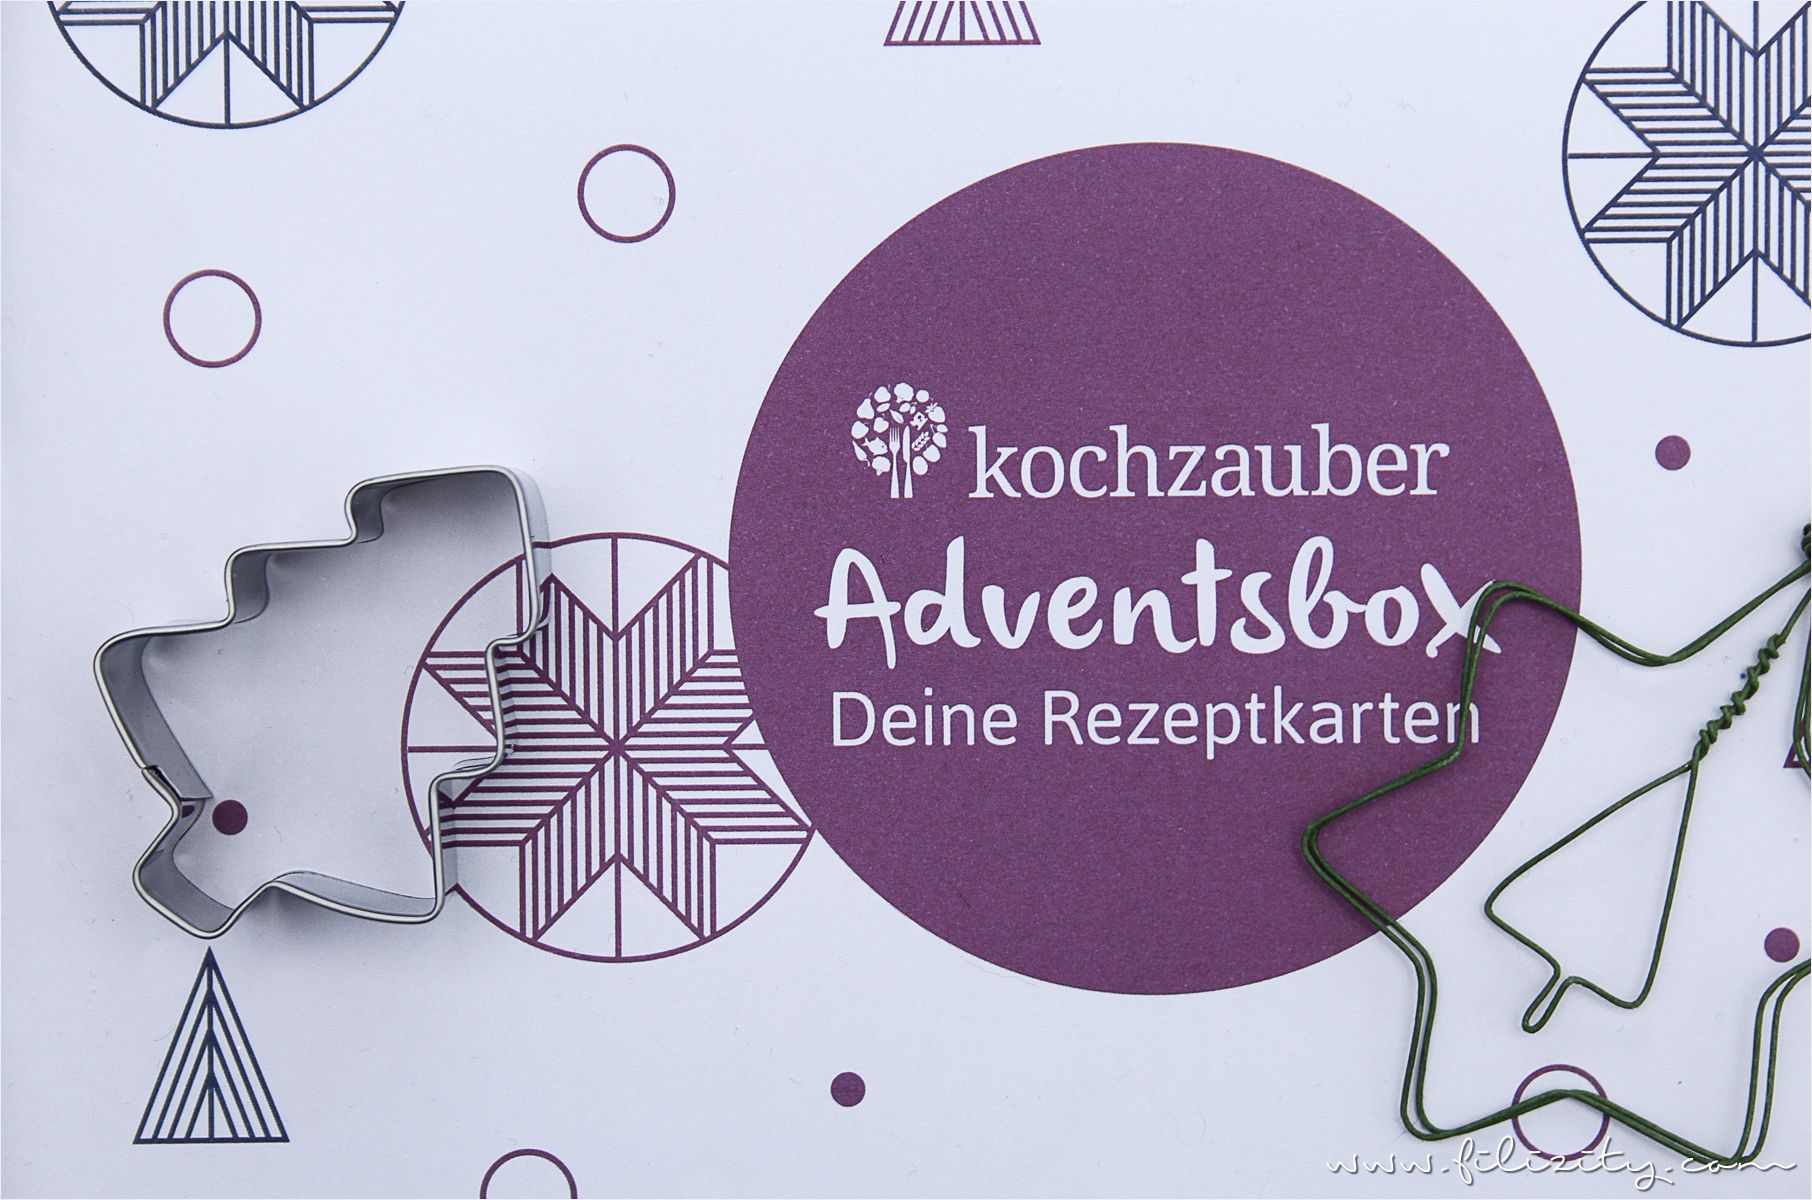 Vorfreude auf Weihnachten: Plätzchen backen mit der Adventsbox von Kochzauber